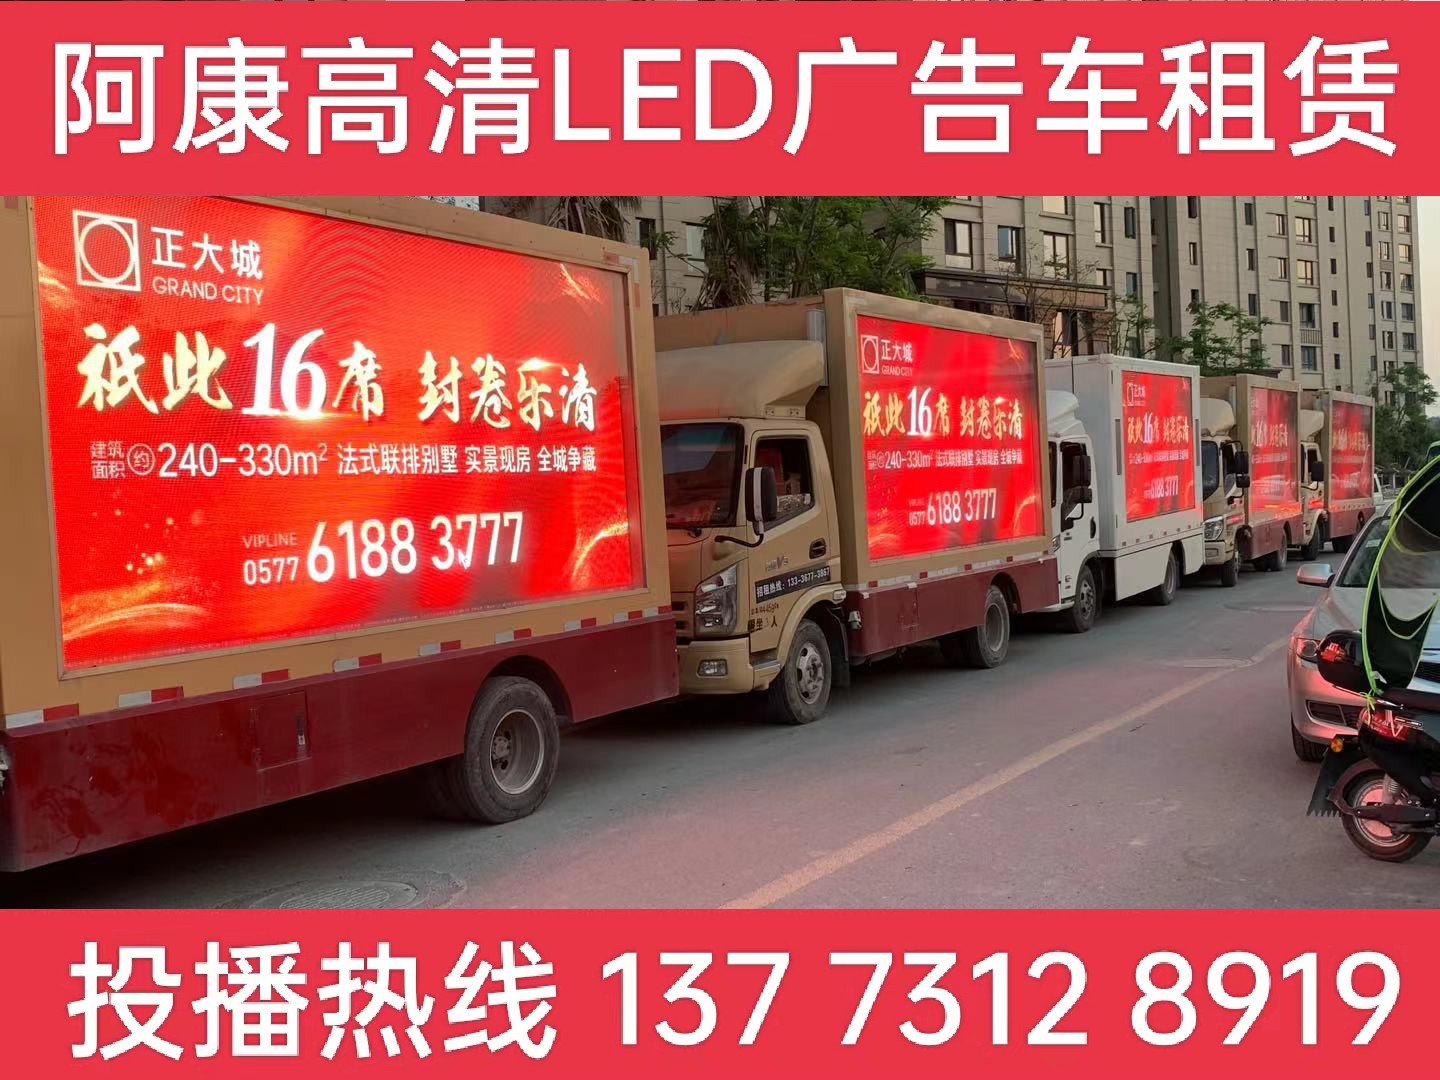 德清县LED广告车出租